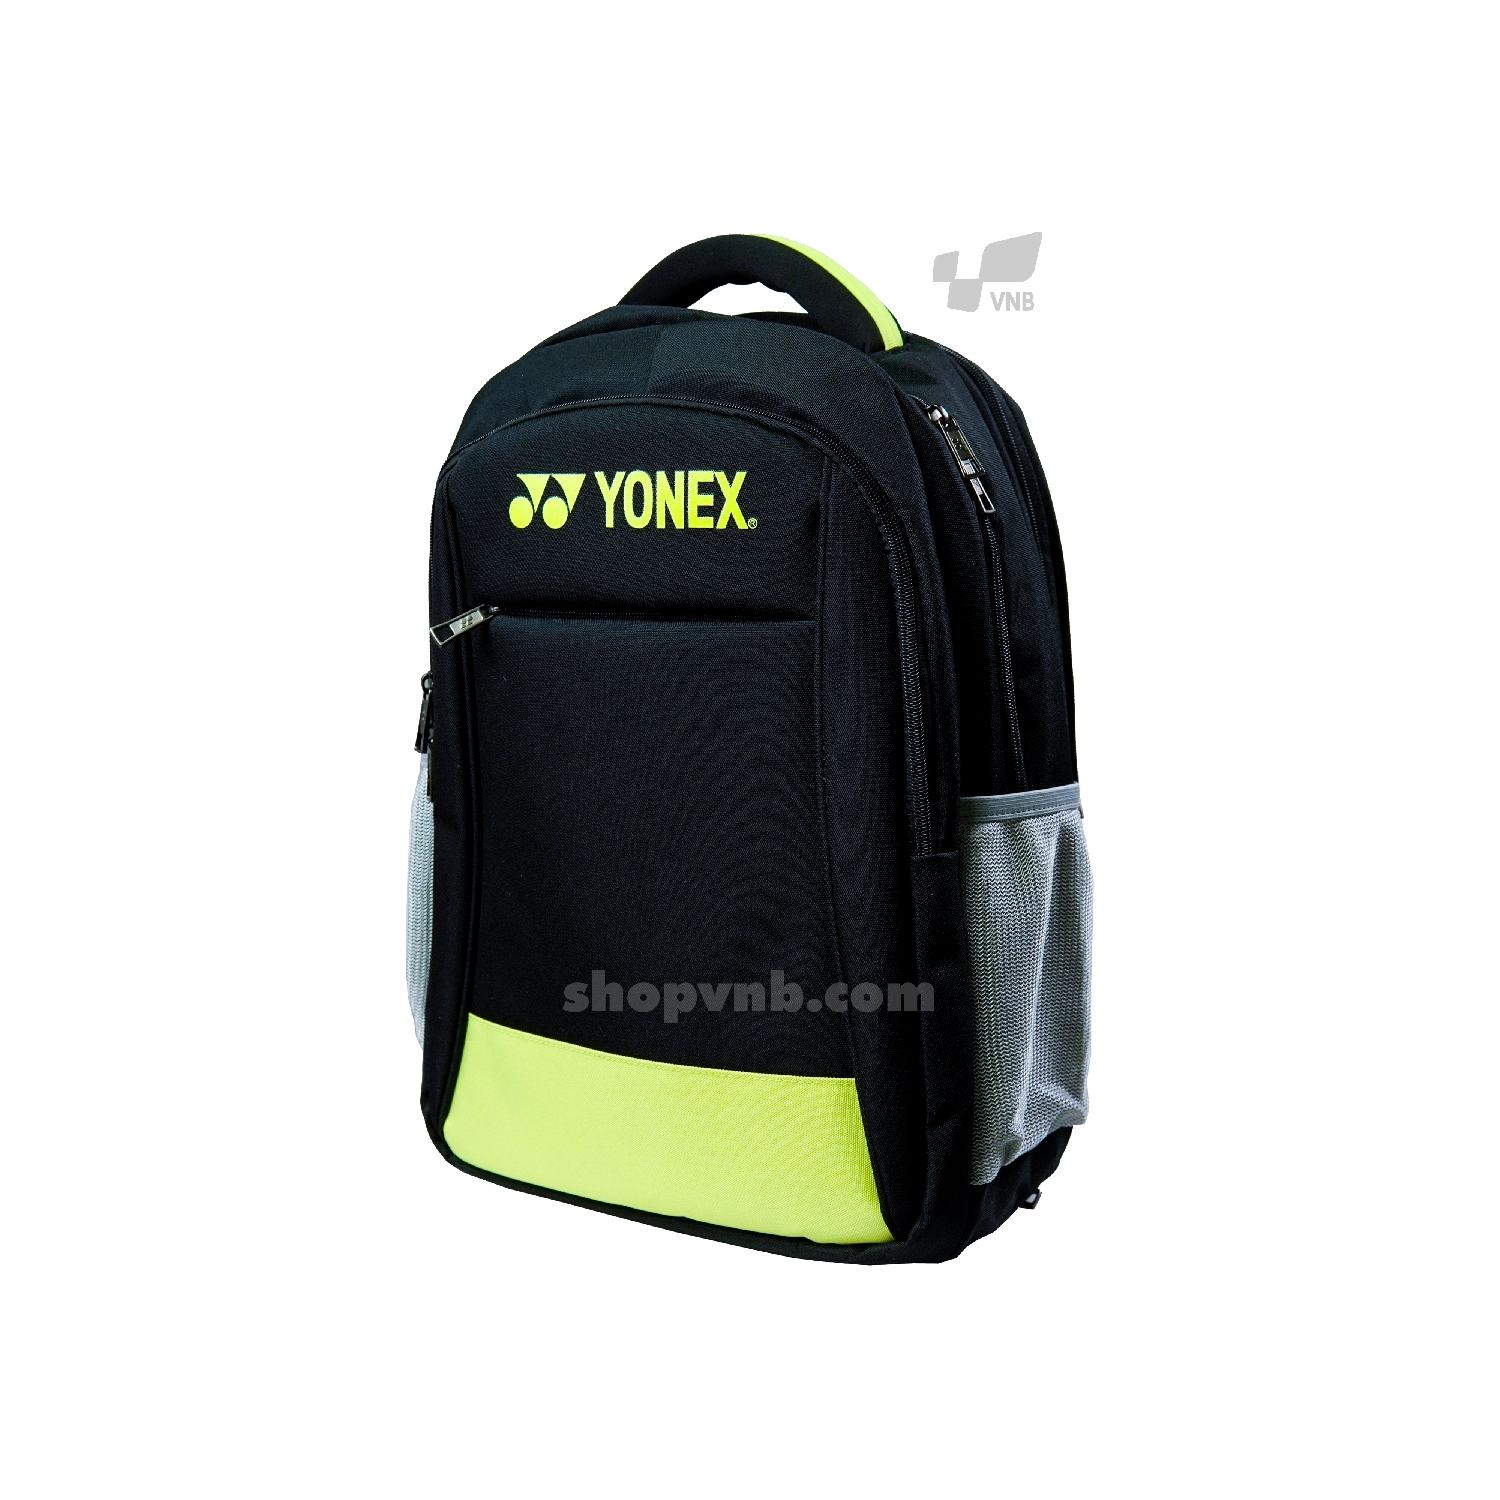 Balo cầu lông giá rẻ Yonex Bag1399 2020